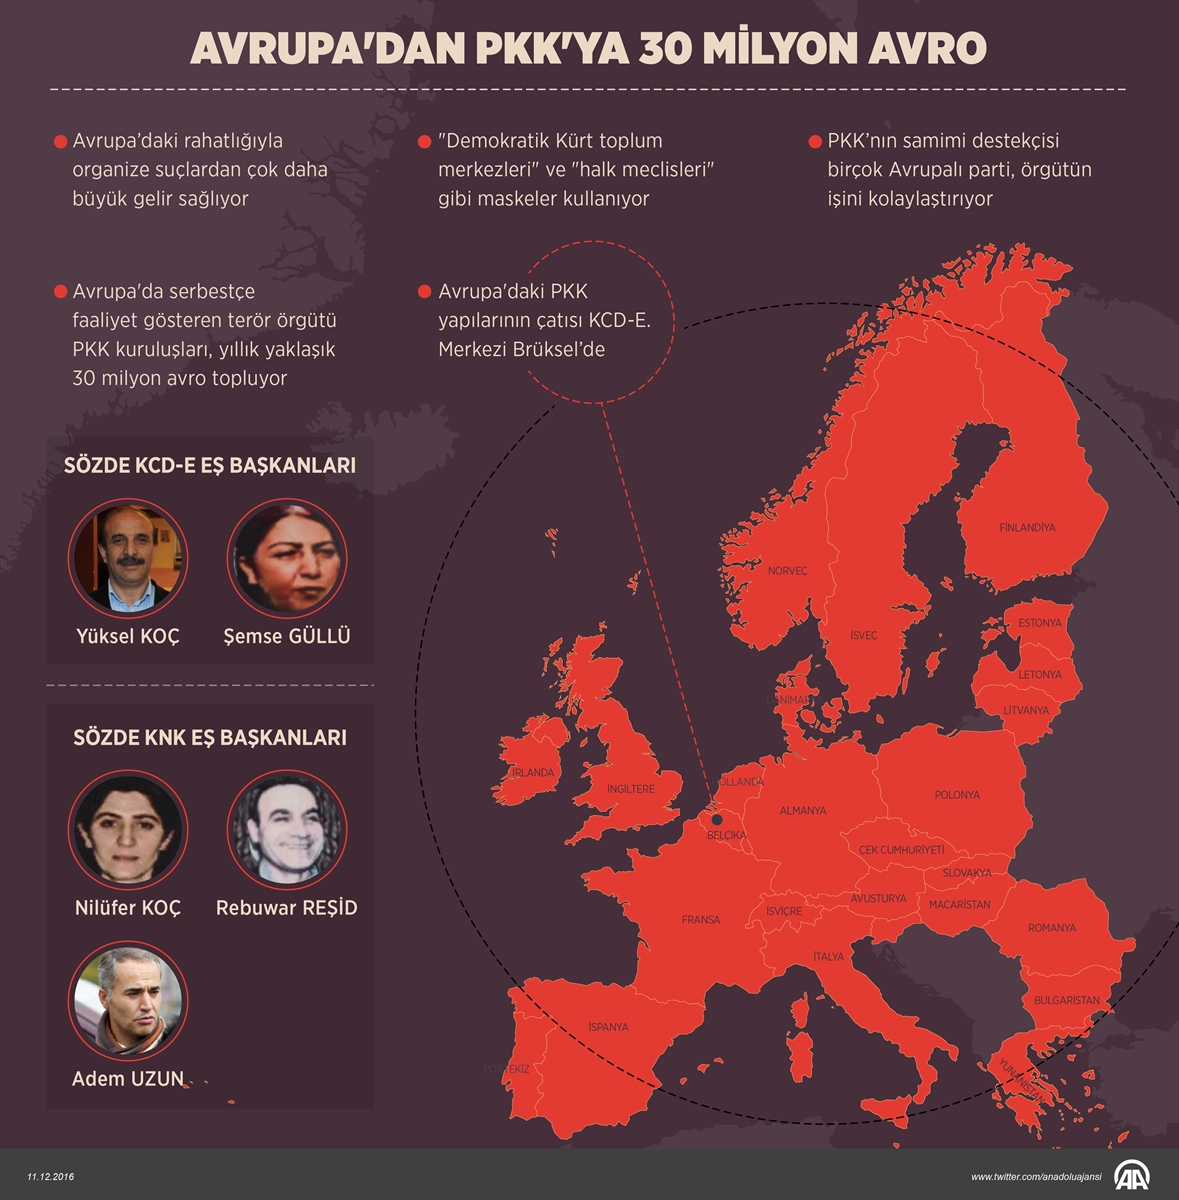 Avrupa'dan PKK'ya para akışı 